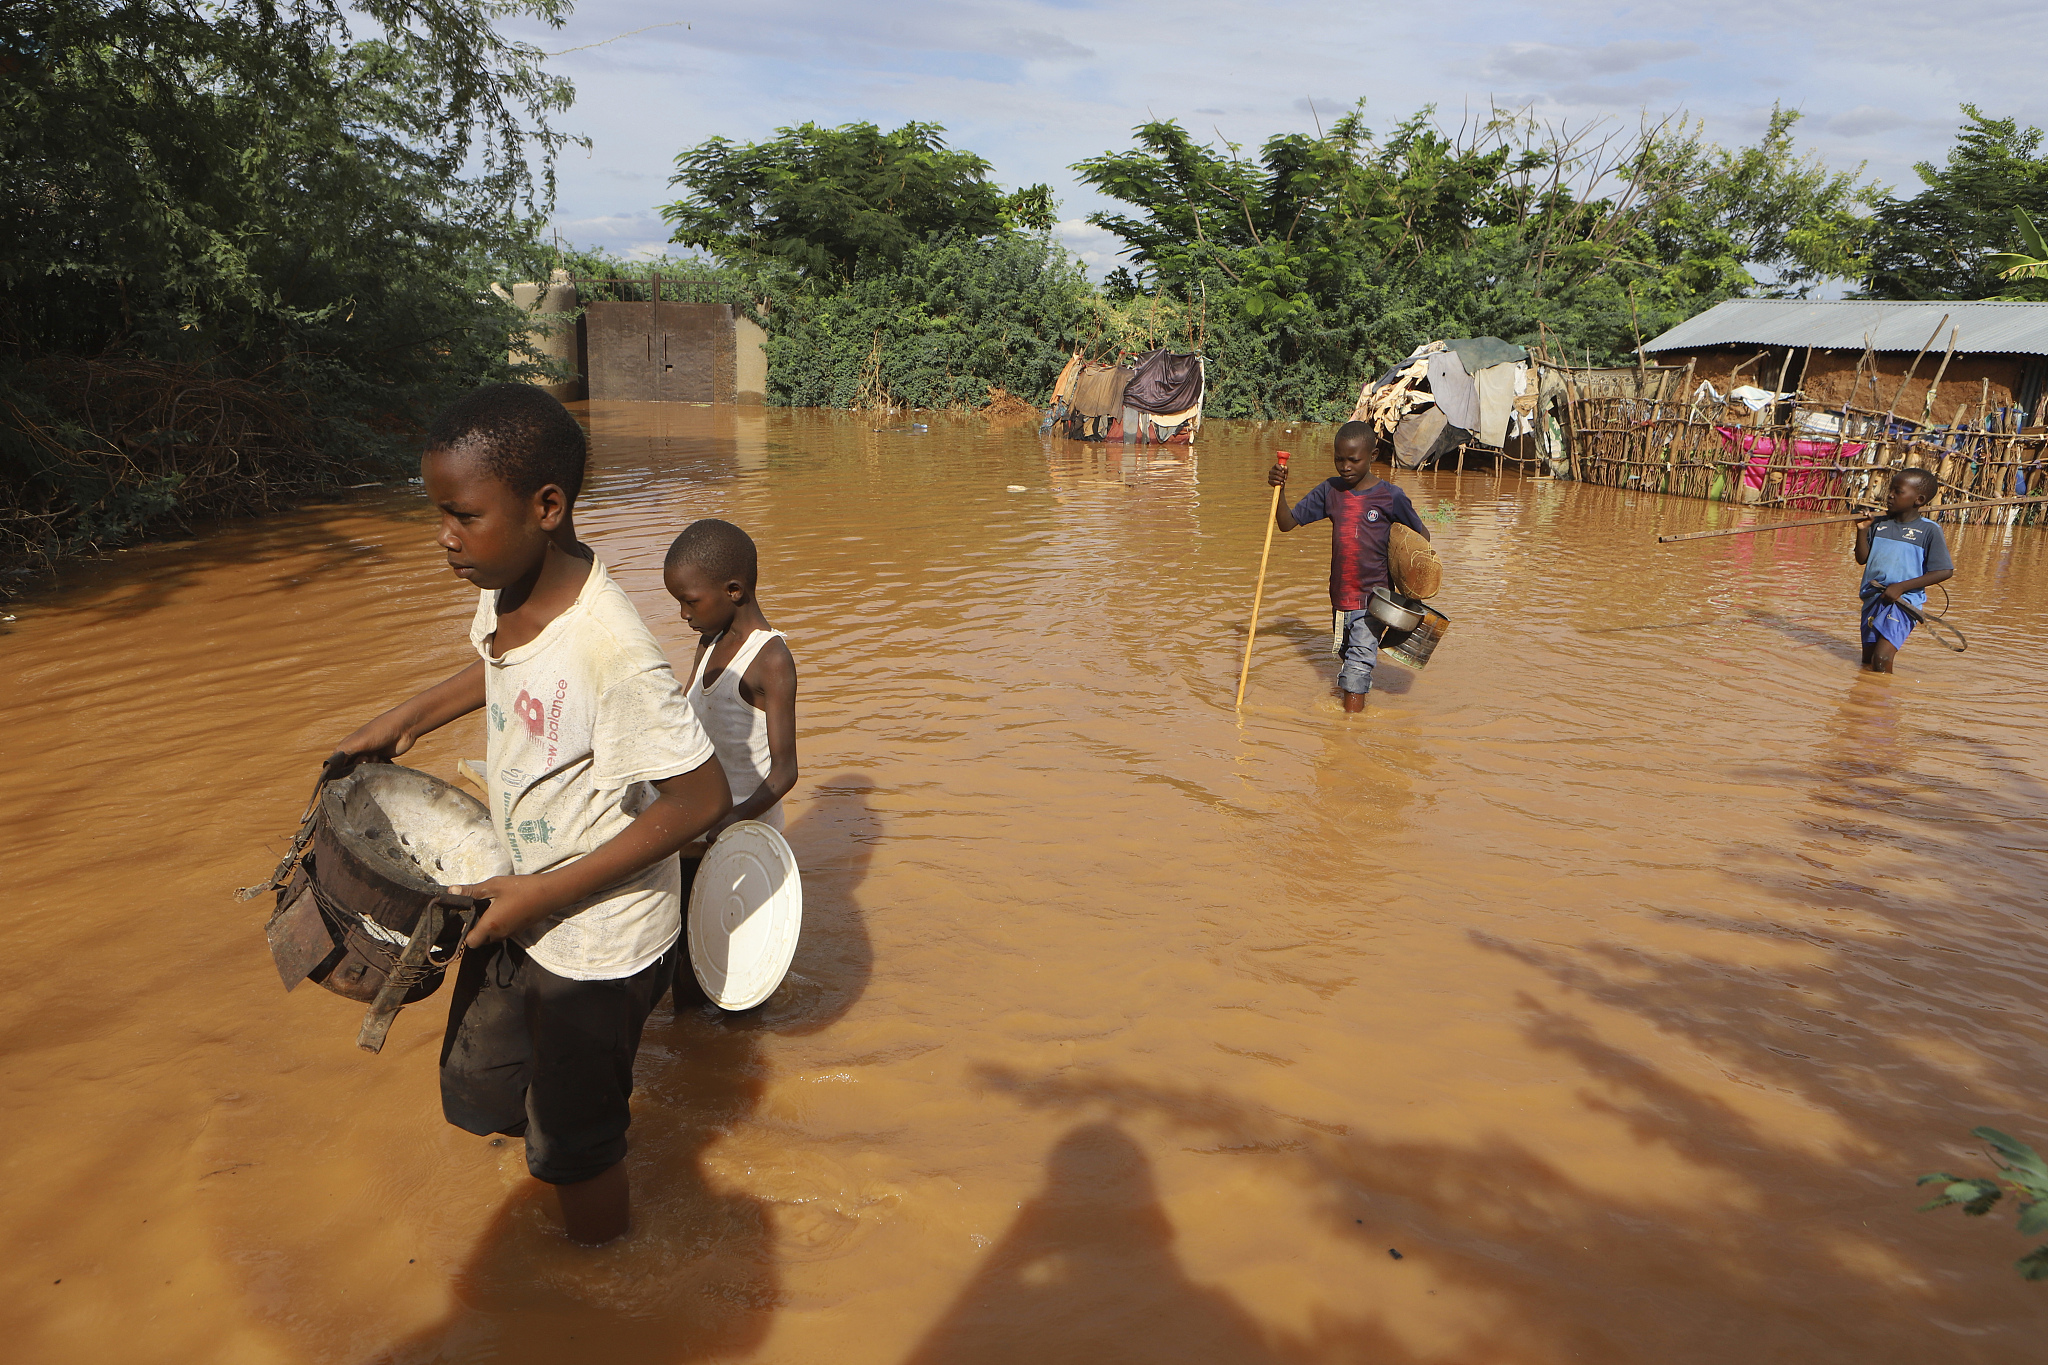 Kenya faces widespread devastation as floods claim over 90 lives, displace thousands